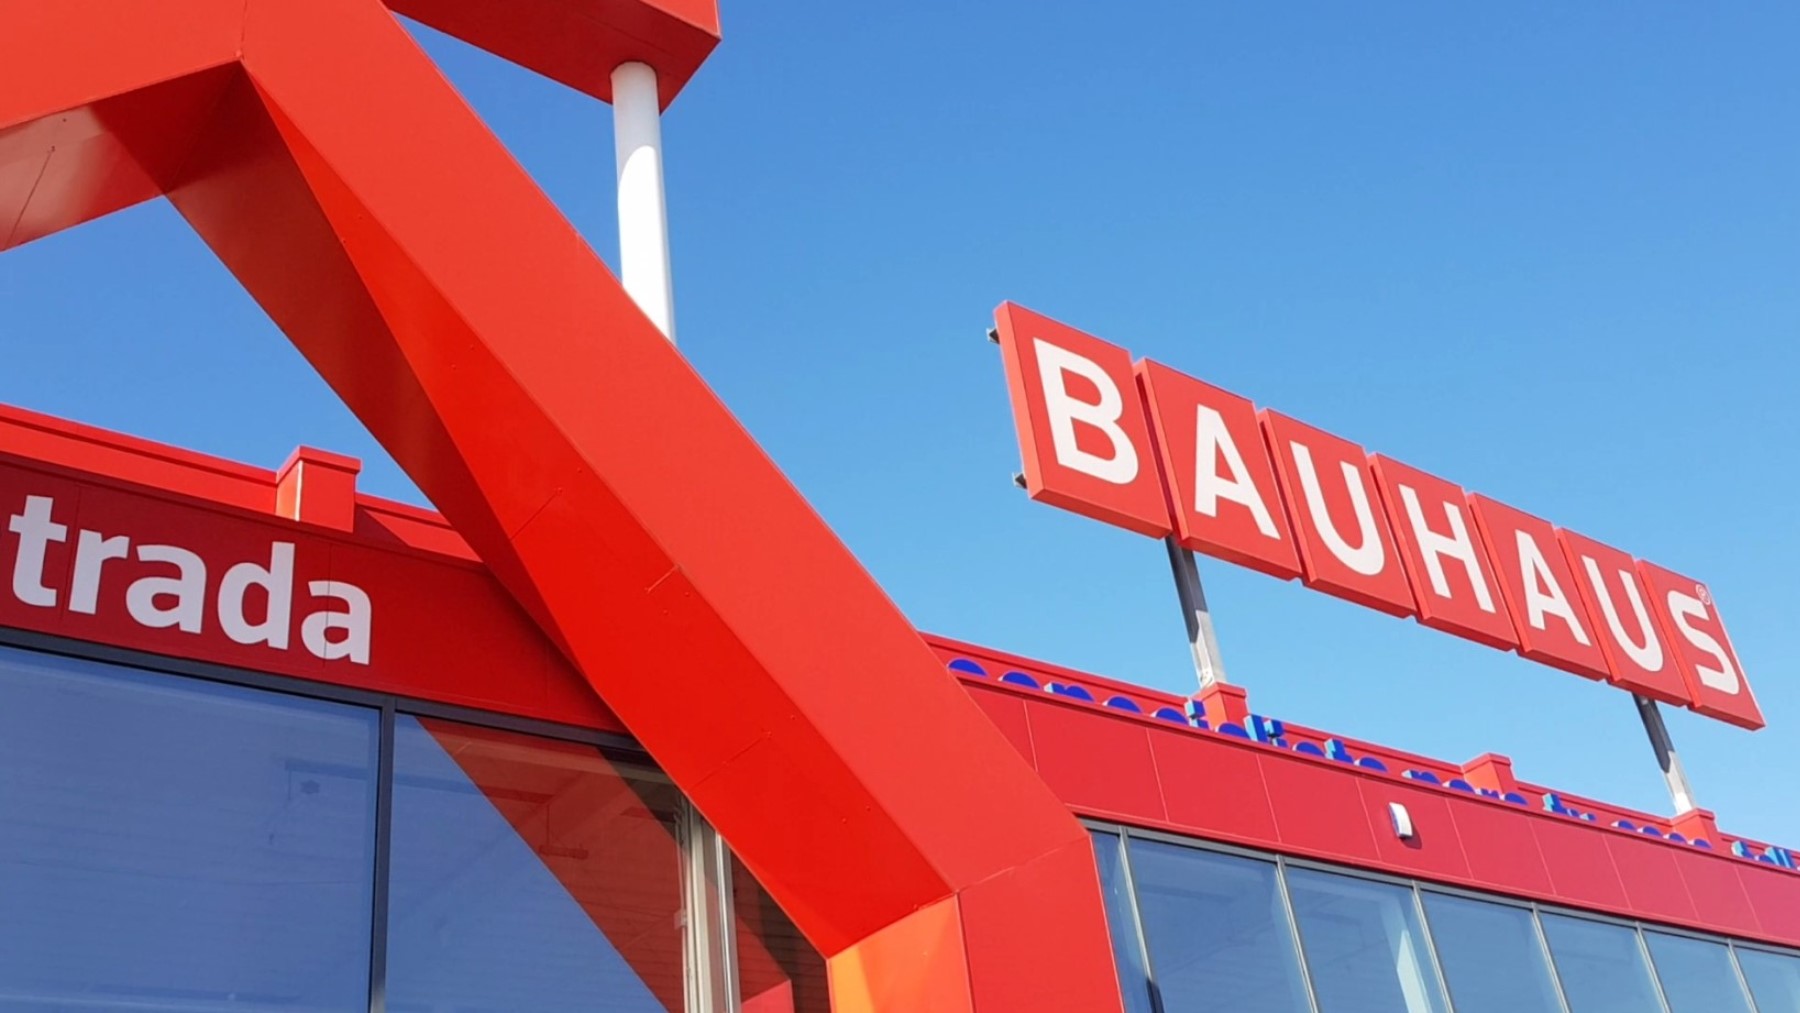 Bauhaus se pasa el juego con la barbacoa más buscada del mercado